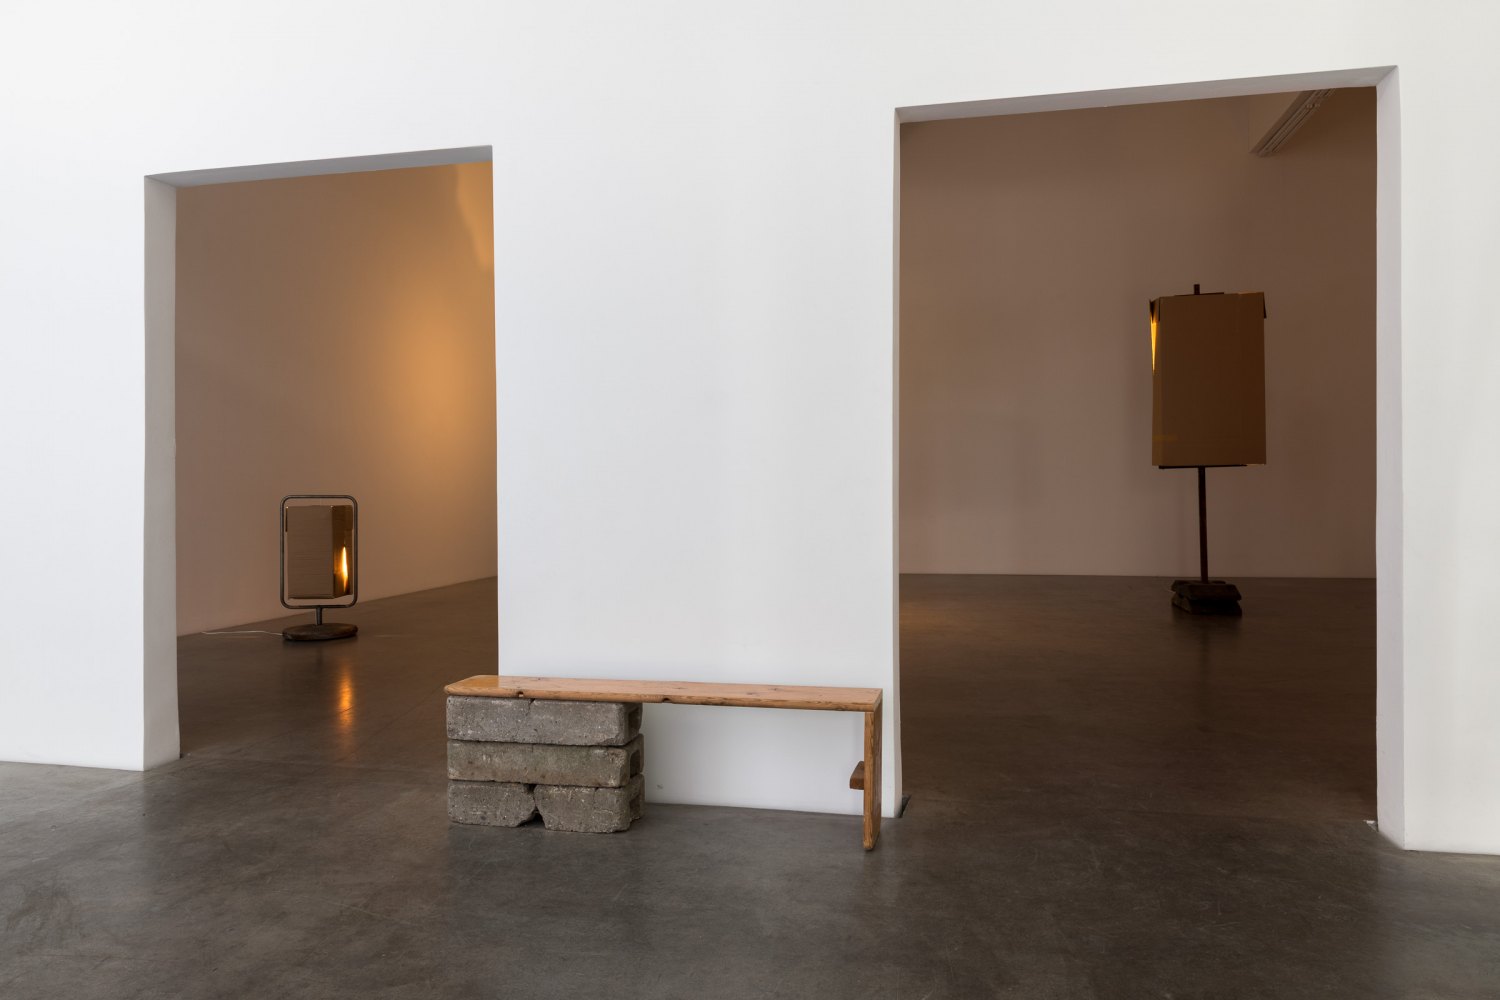 Installation view, Klara Lidén, Berlin Fall, Galerie Neu, Berlin, 2019